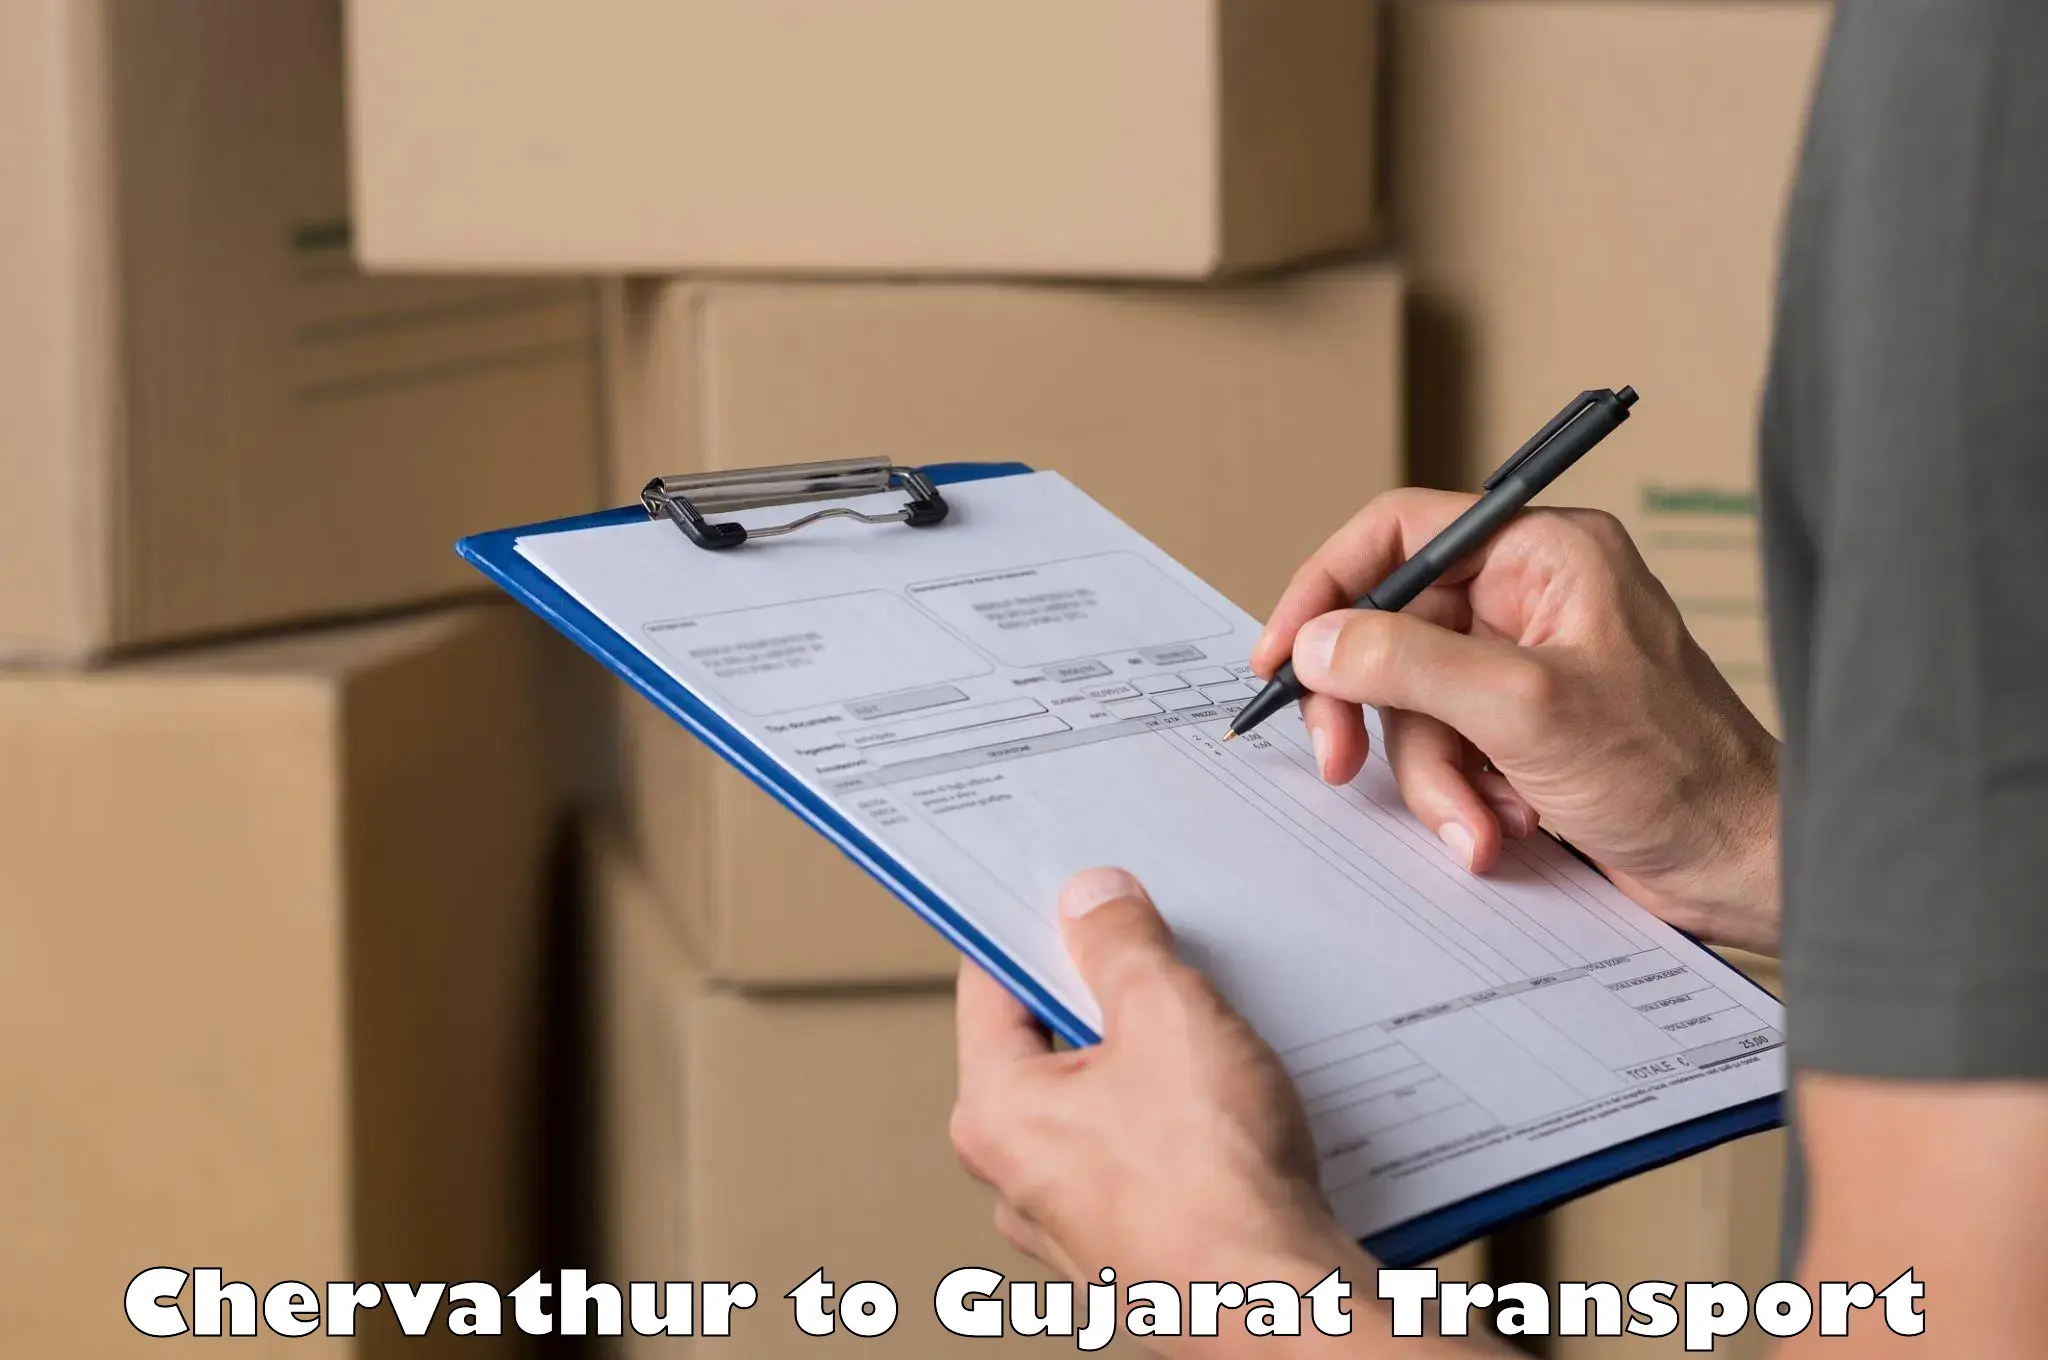 Pick up transport service Chervathur to Nanpura